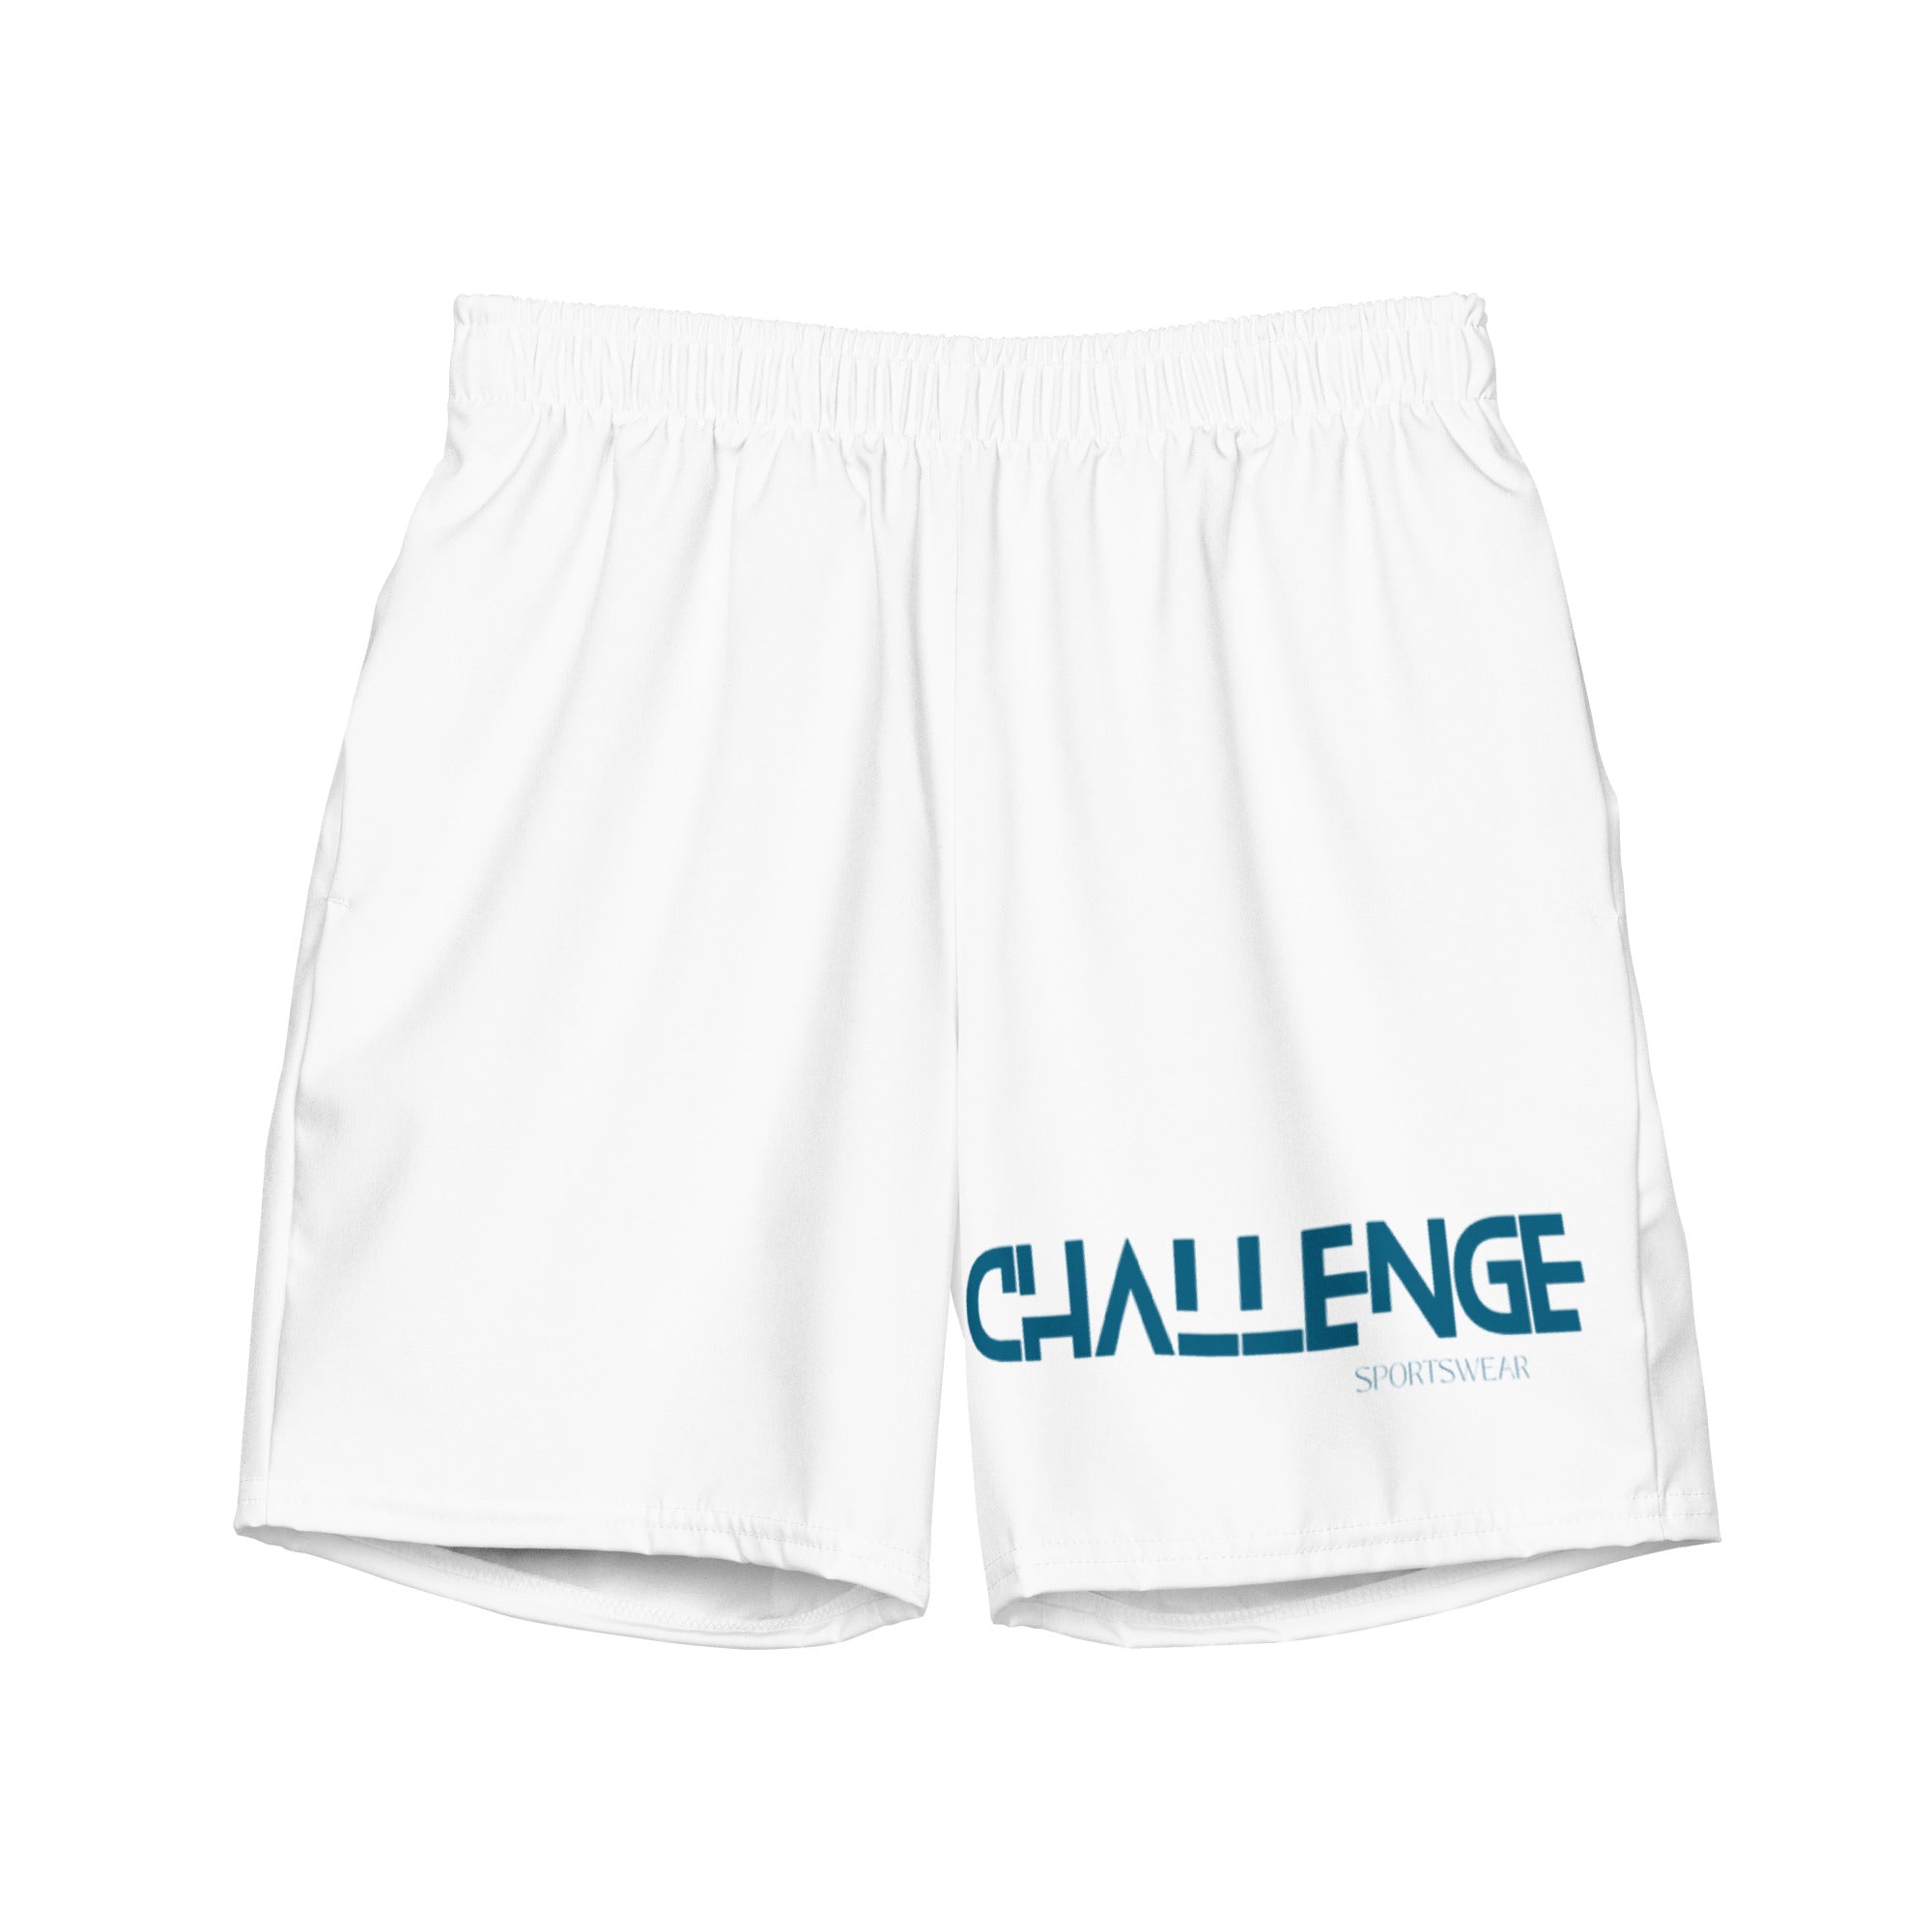 Challenge-sportswear - Men's swim trunks